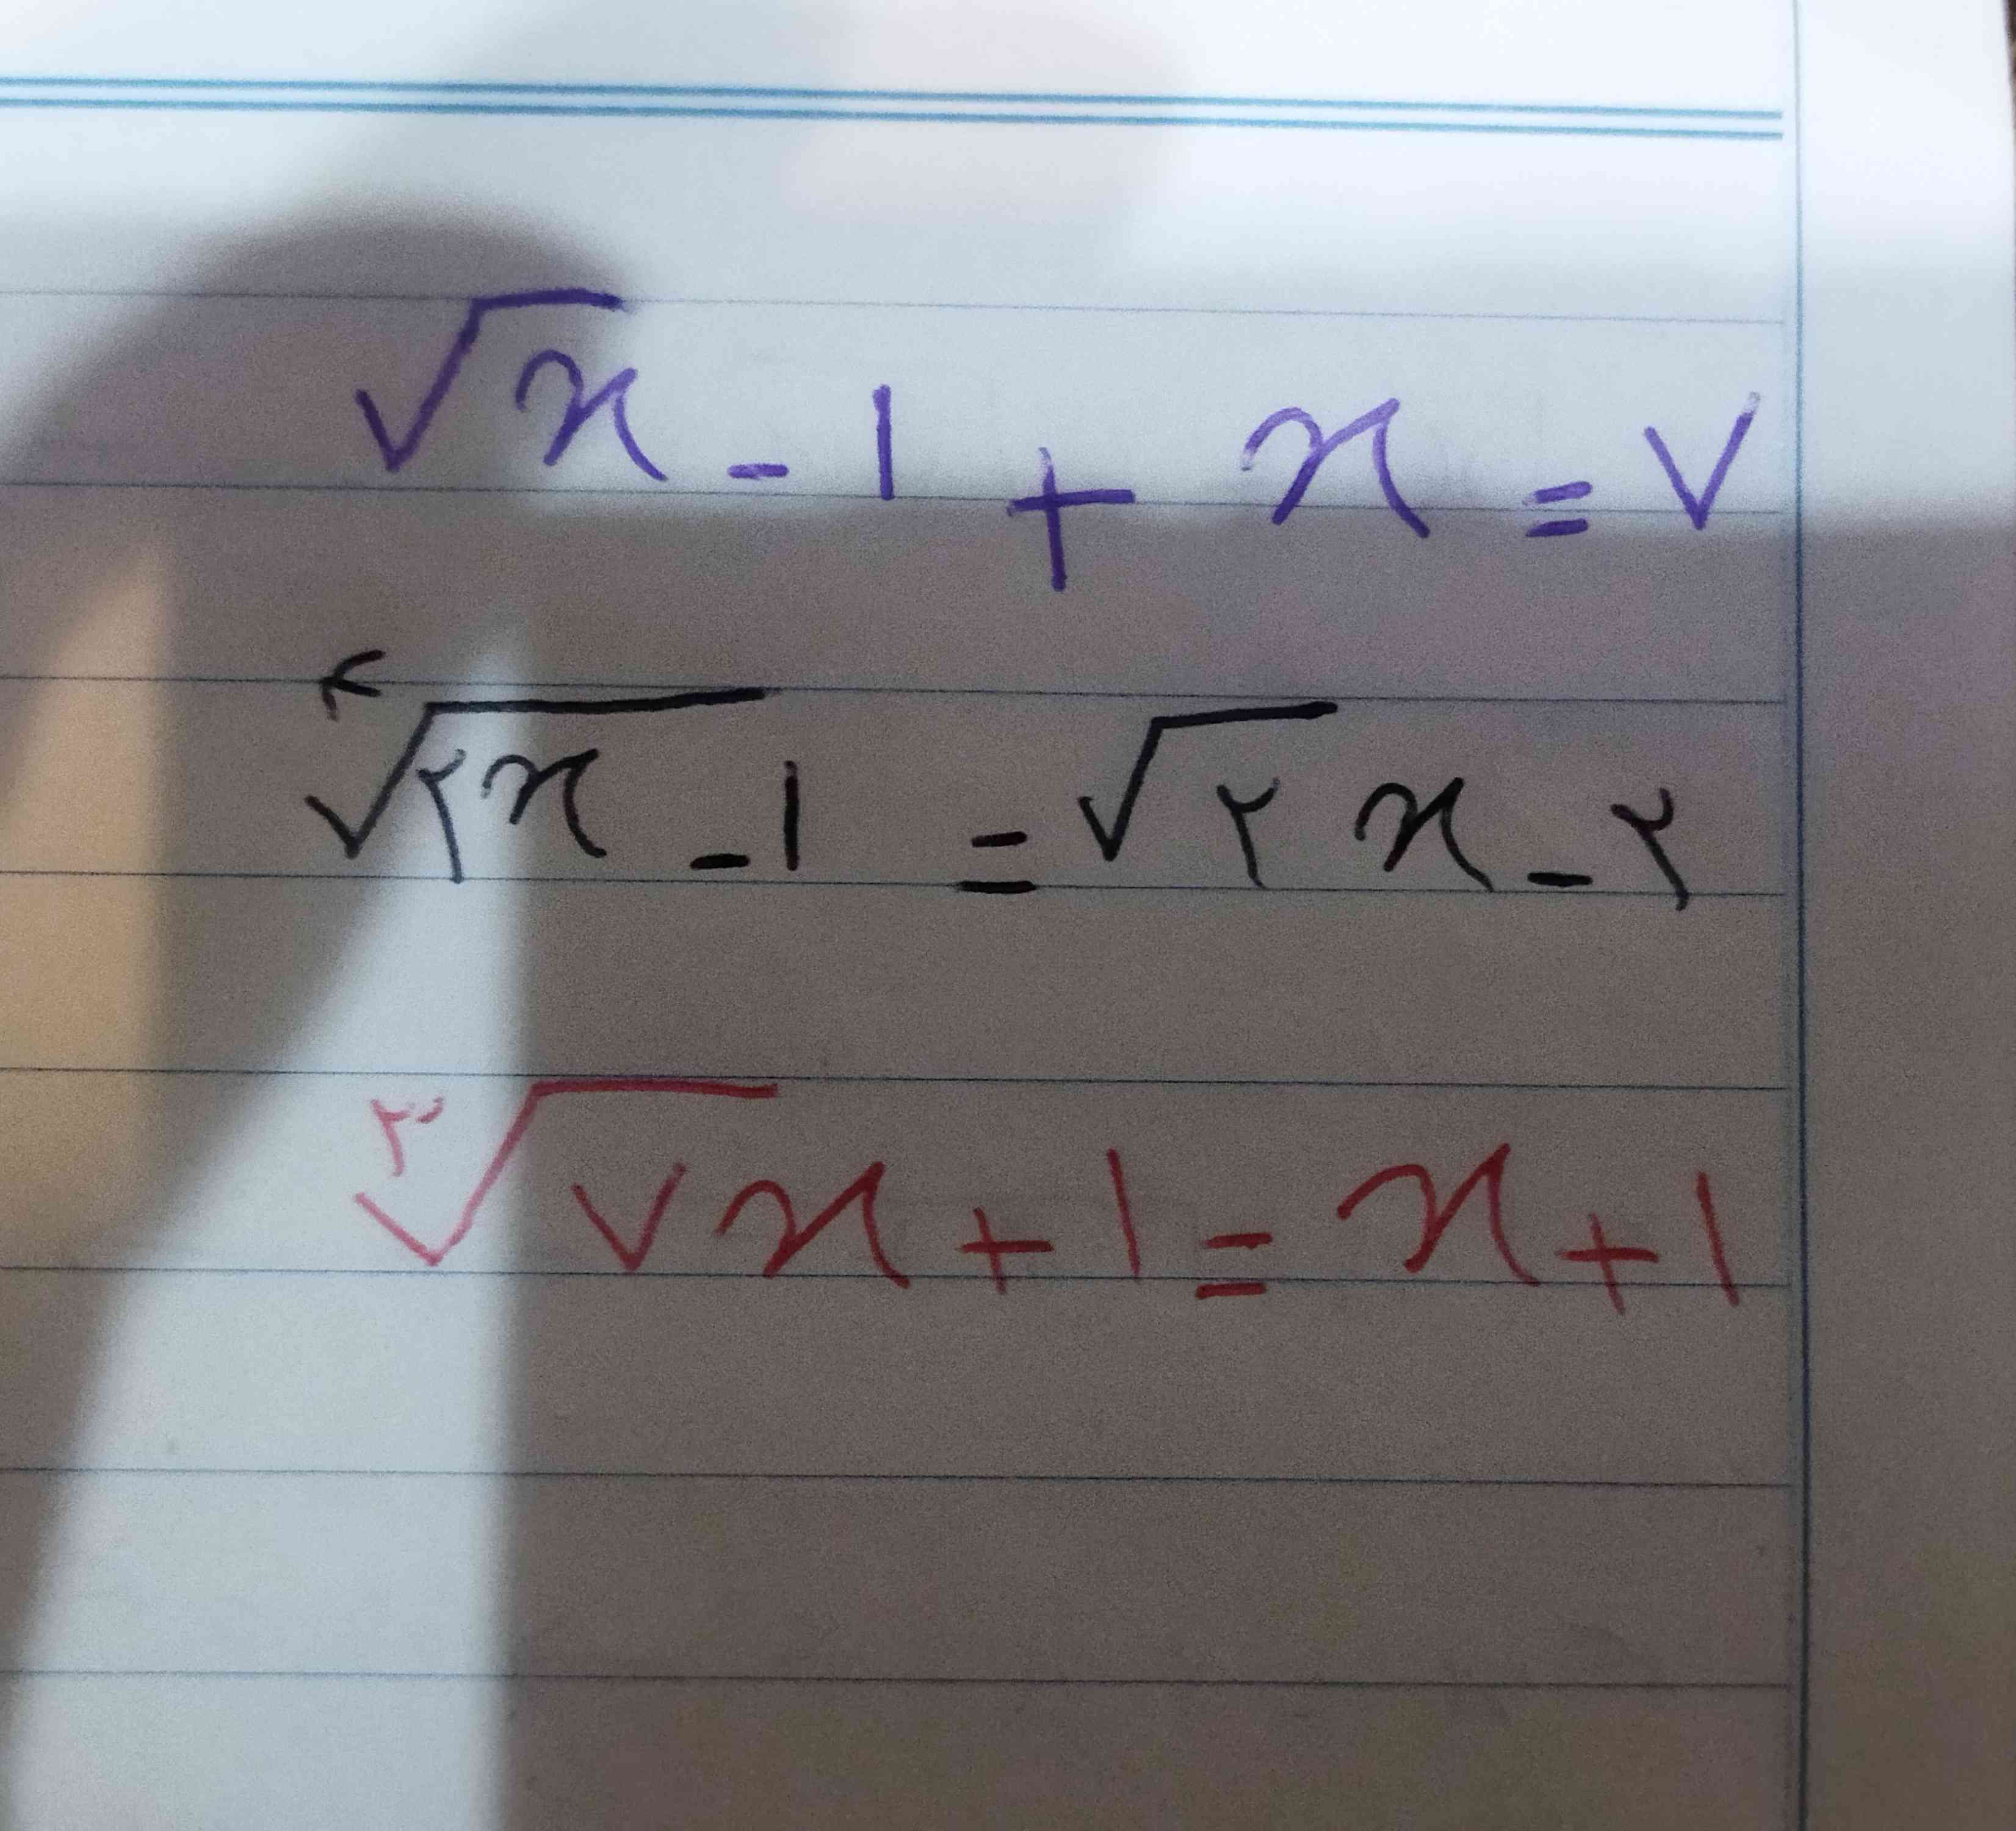 خواهش میکنم اگر میشه به نفر این سه معادله ی گنگ رو حل کنه خیلی واجبه 🙏